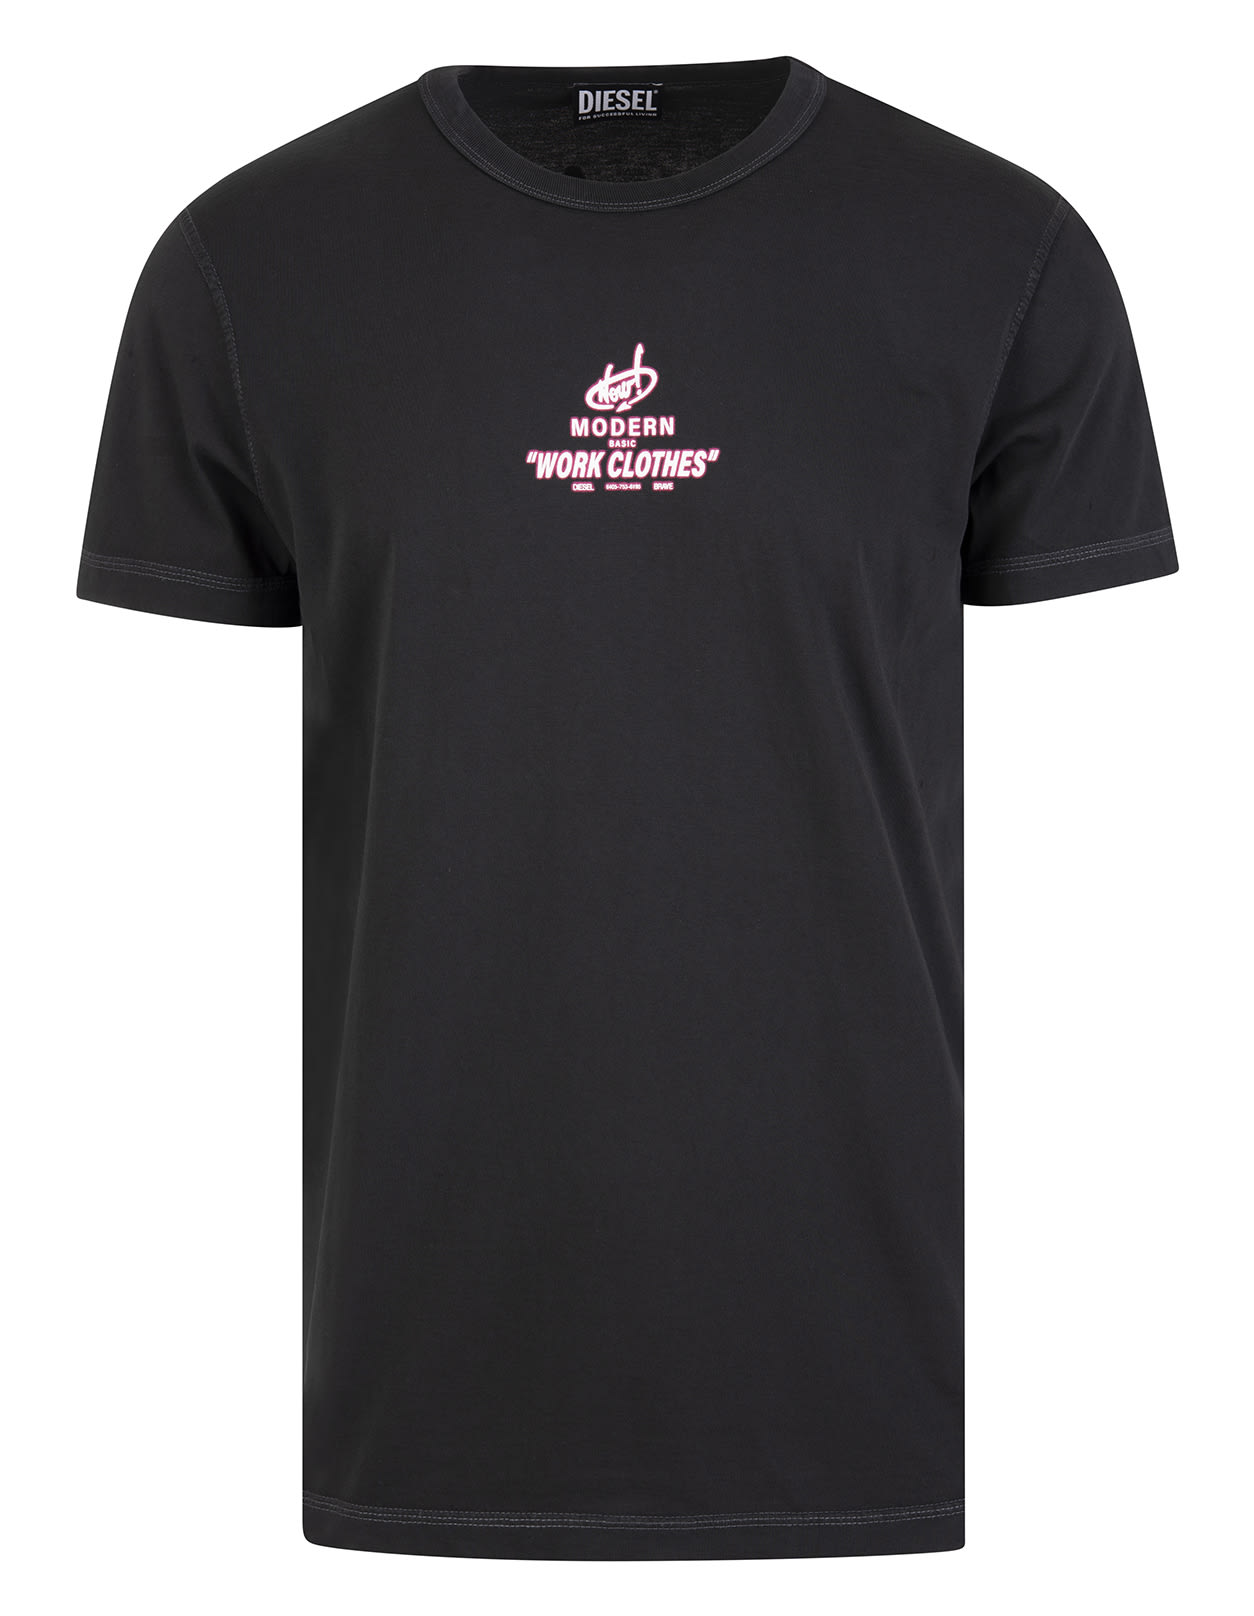 Diesel Man Black Slim Fit T-shirt With Printed Logo